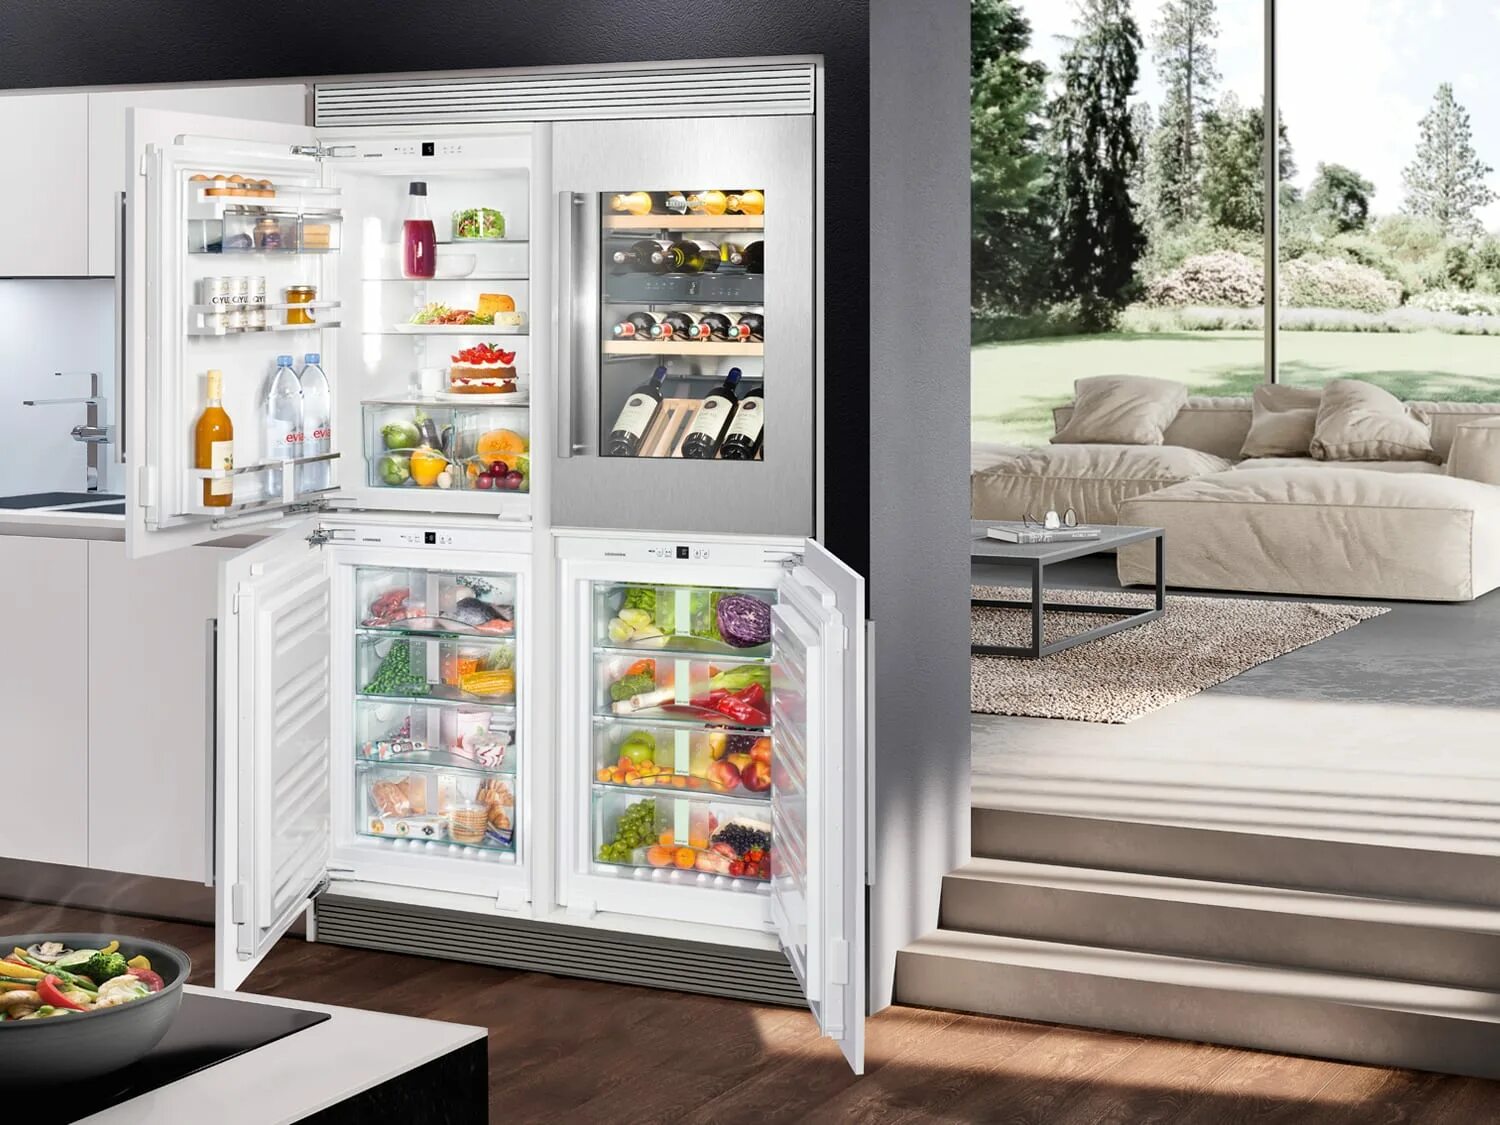 Холодильник Либхер двухдверный. Холодильник Liebherr Side by Side. Холодильник Либхер с винным шкафом. Встраиваемый холодильник Liebherr с зоной свежести. Какой холодильник лучше отзывы покупателей